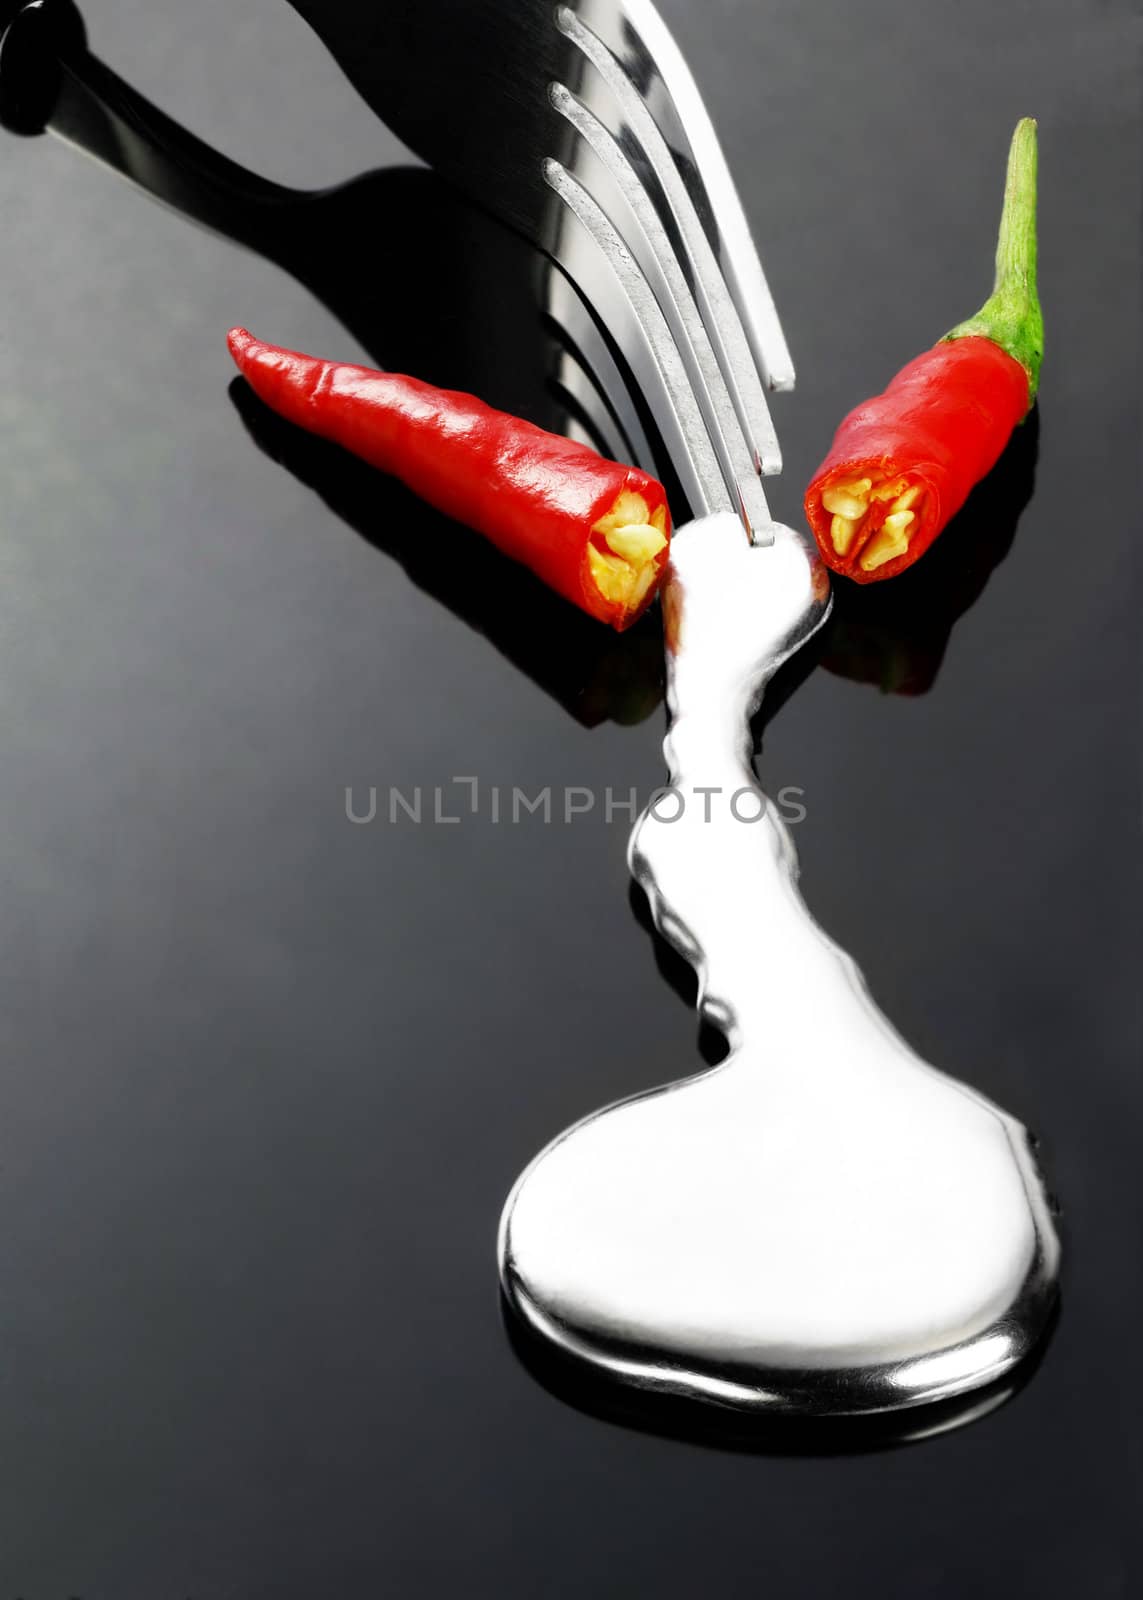 red chili pepper by keko64